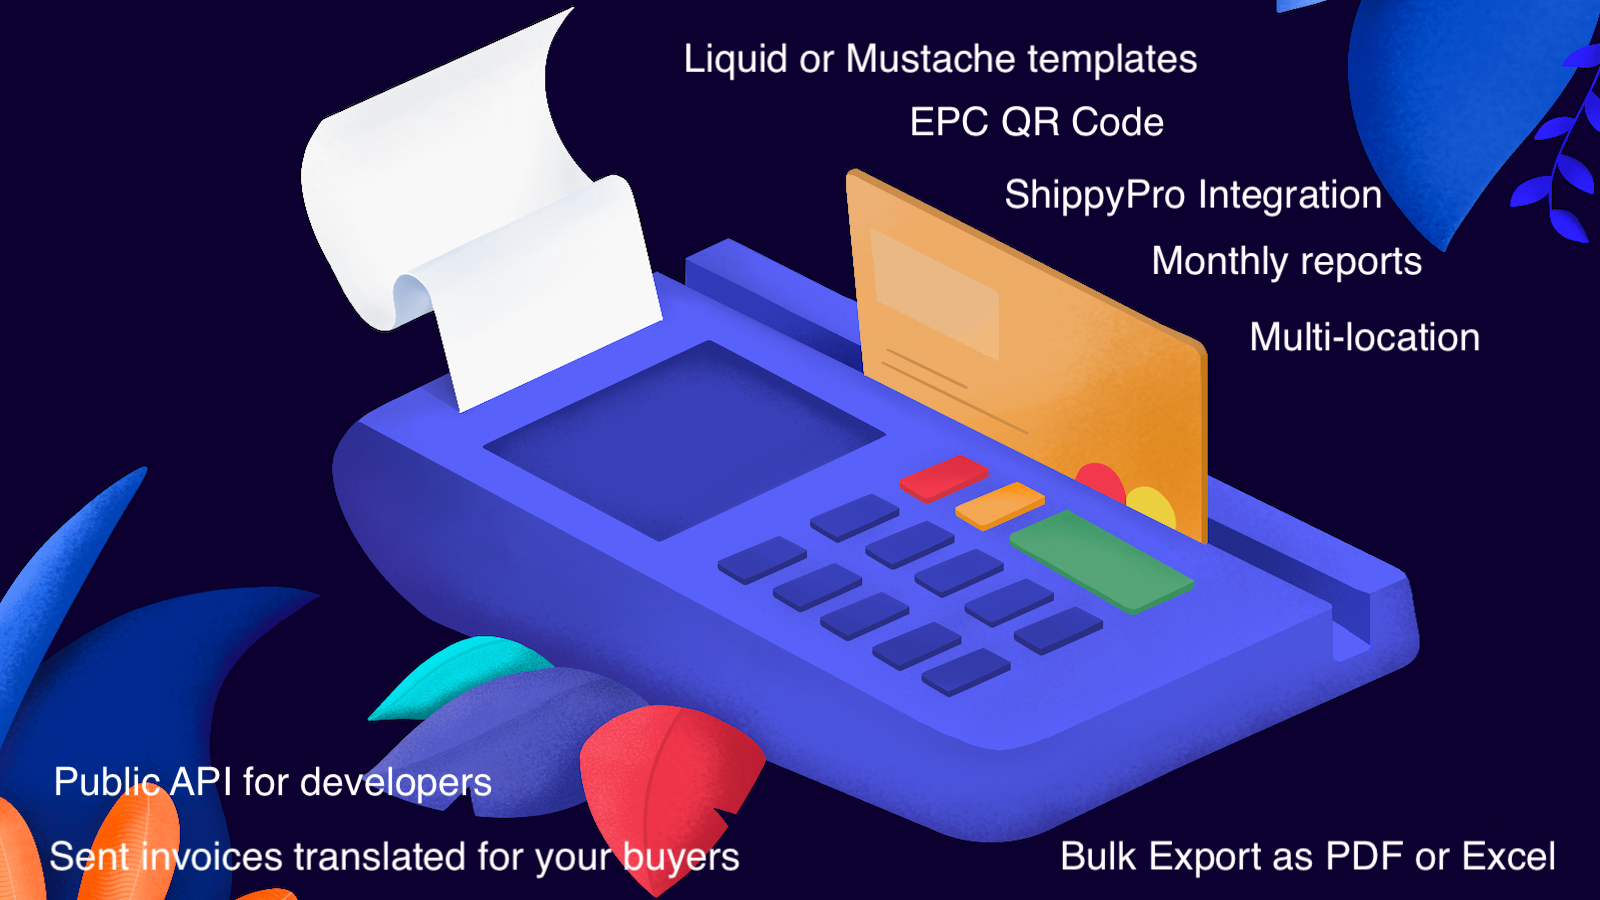 Invoices, EPC QR, Bulk Export, Multi-location, Multilanguage